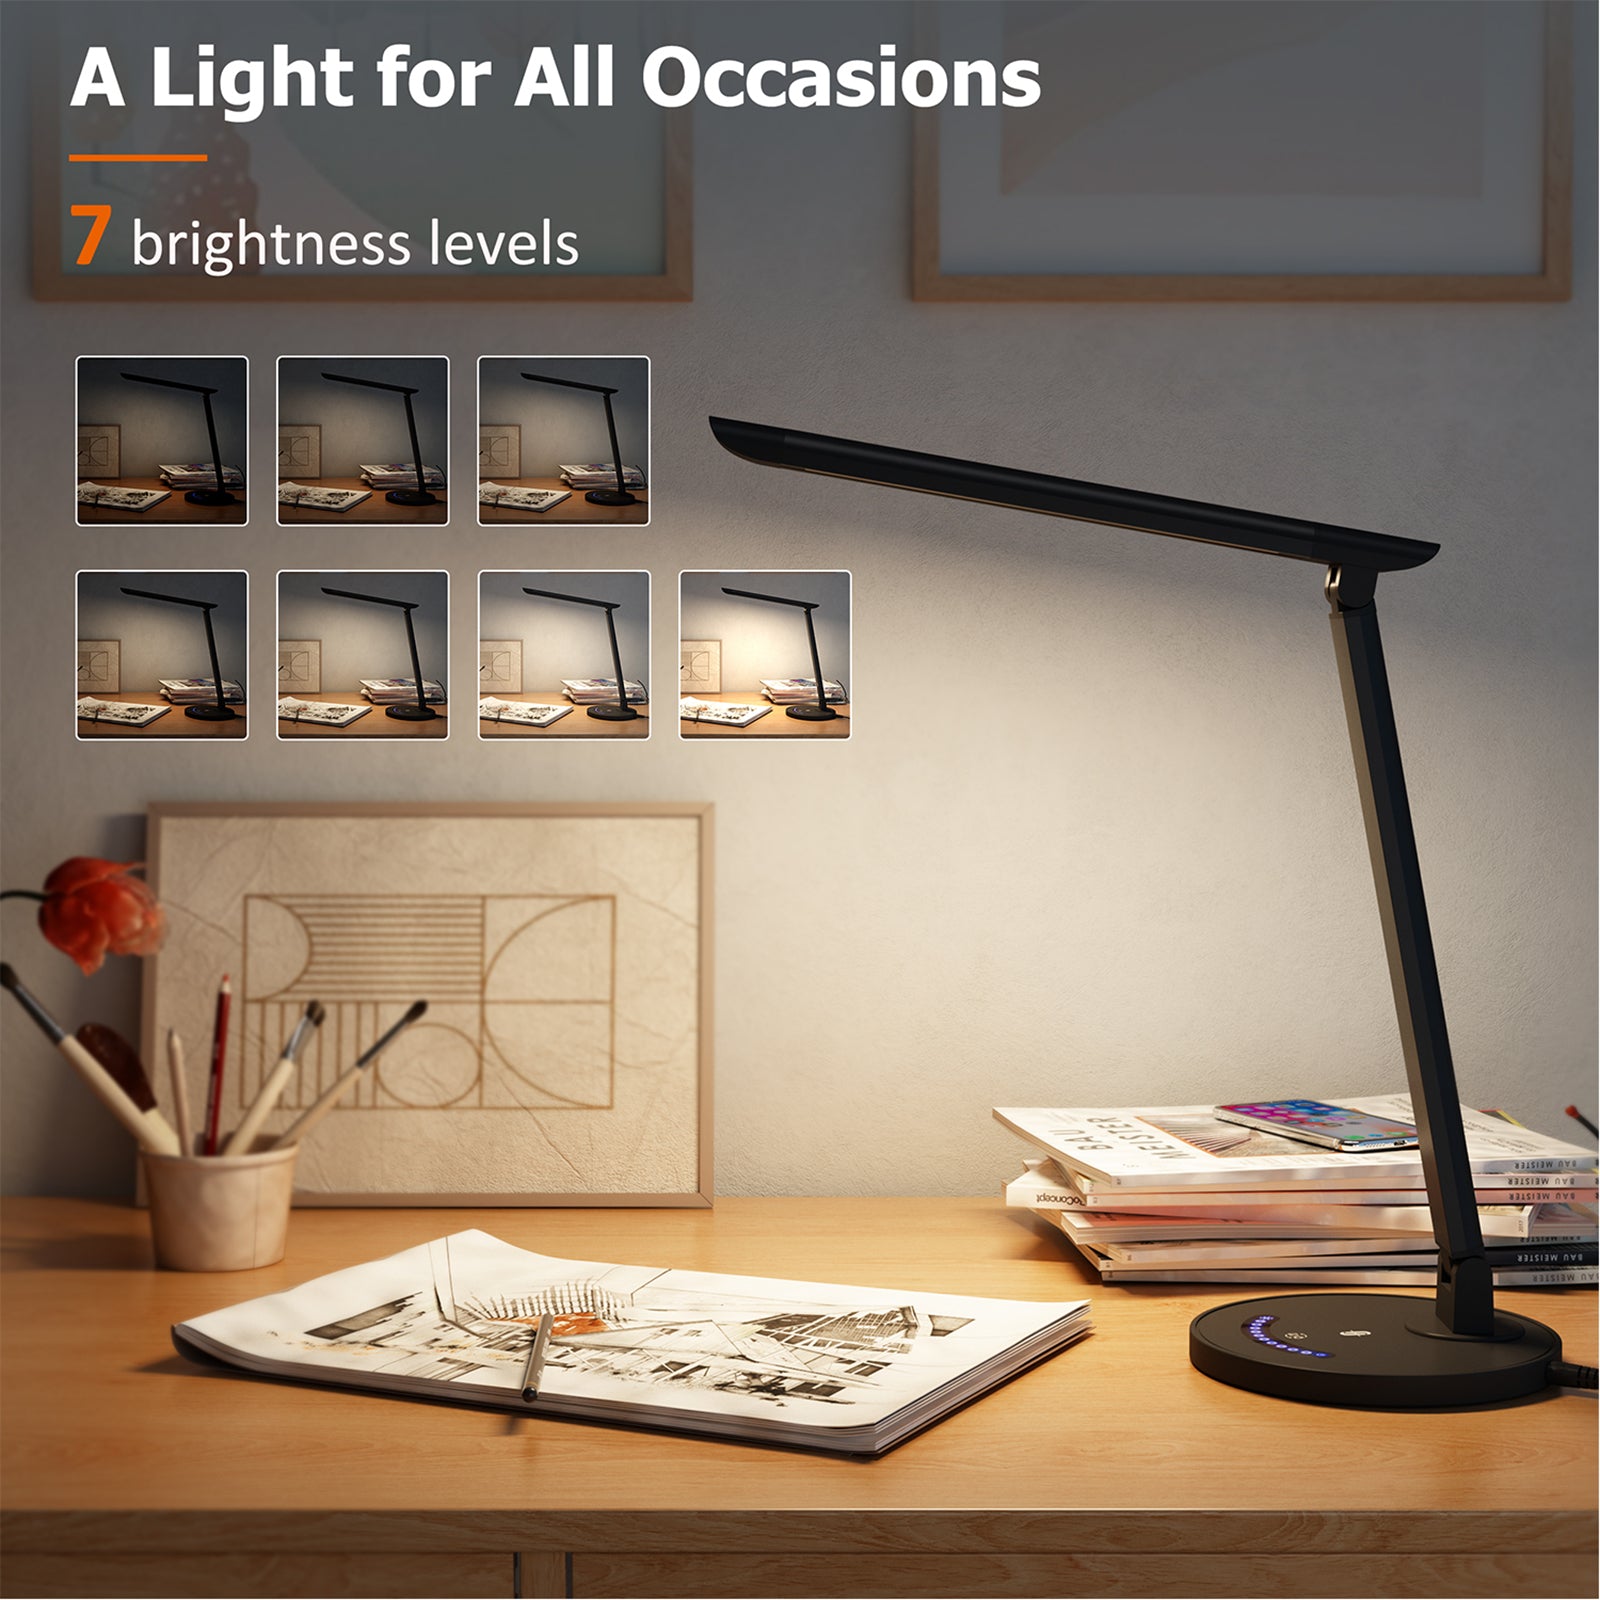 LED Desk Lamp black-led lighting-3100k-4200k(neutral